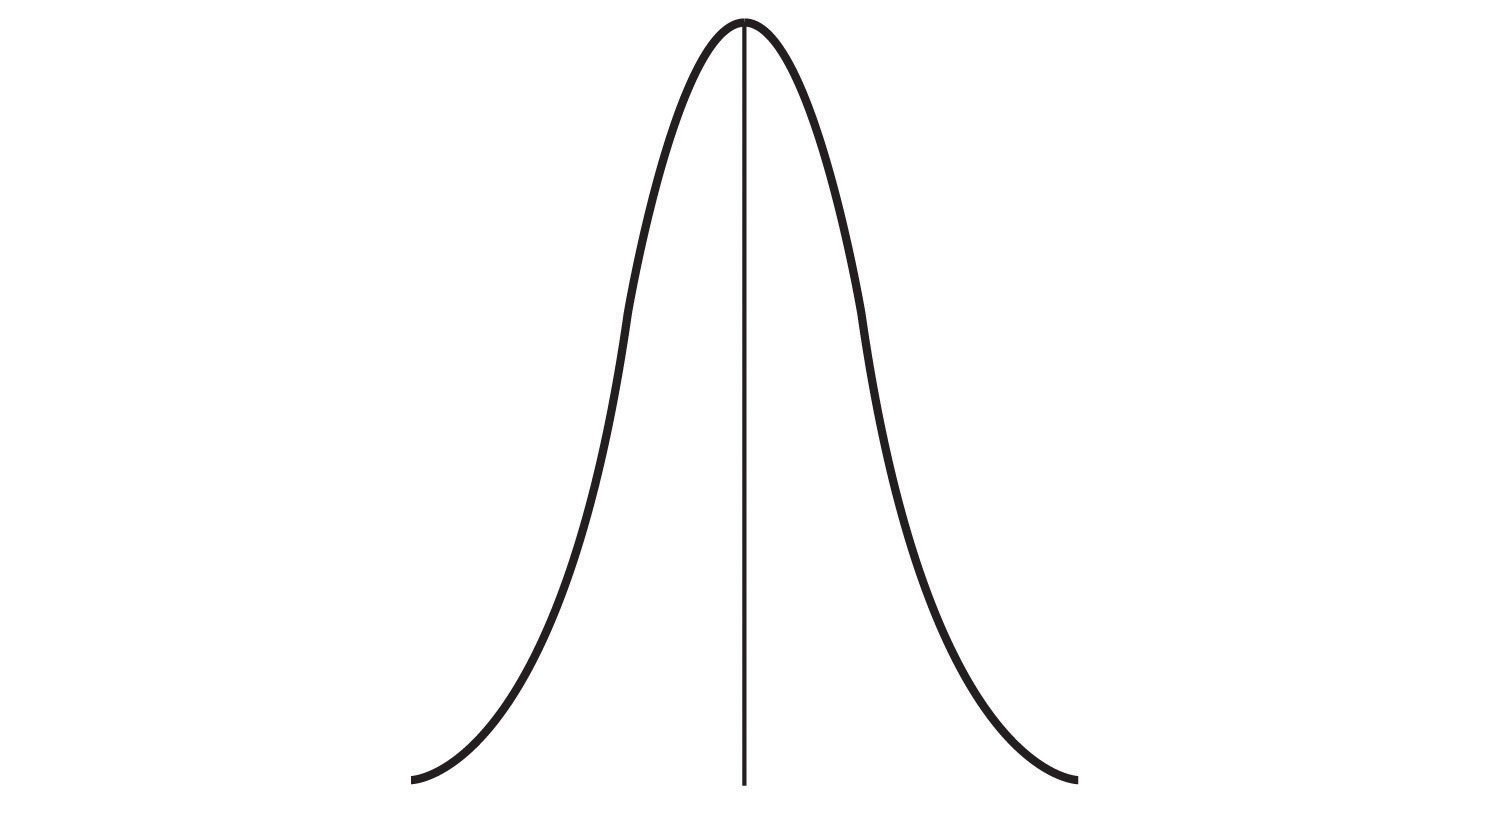 Un gráfico de líneas forma una estrecha forma de campana alrededor de la tendencia central.